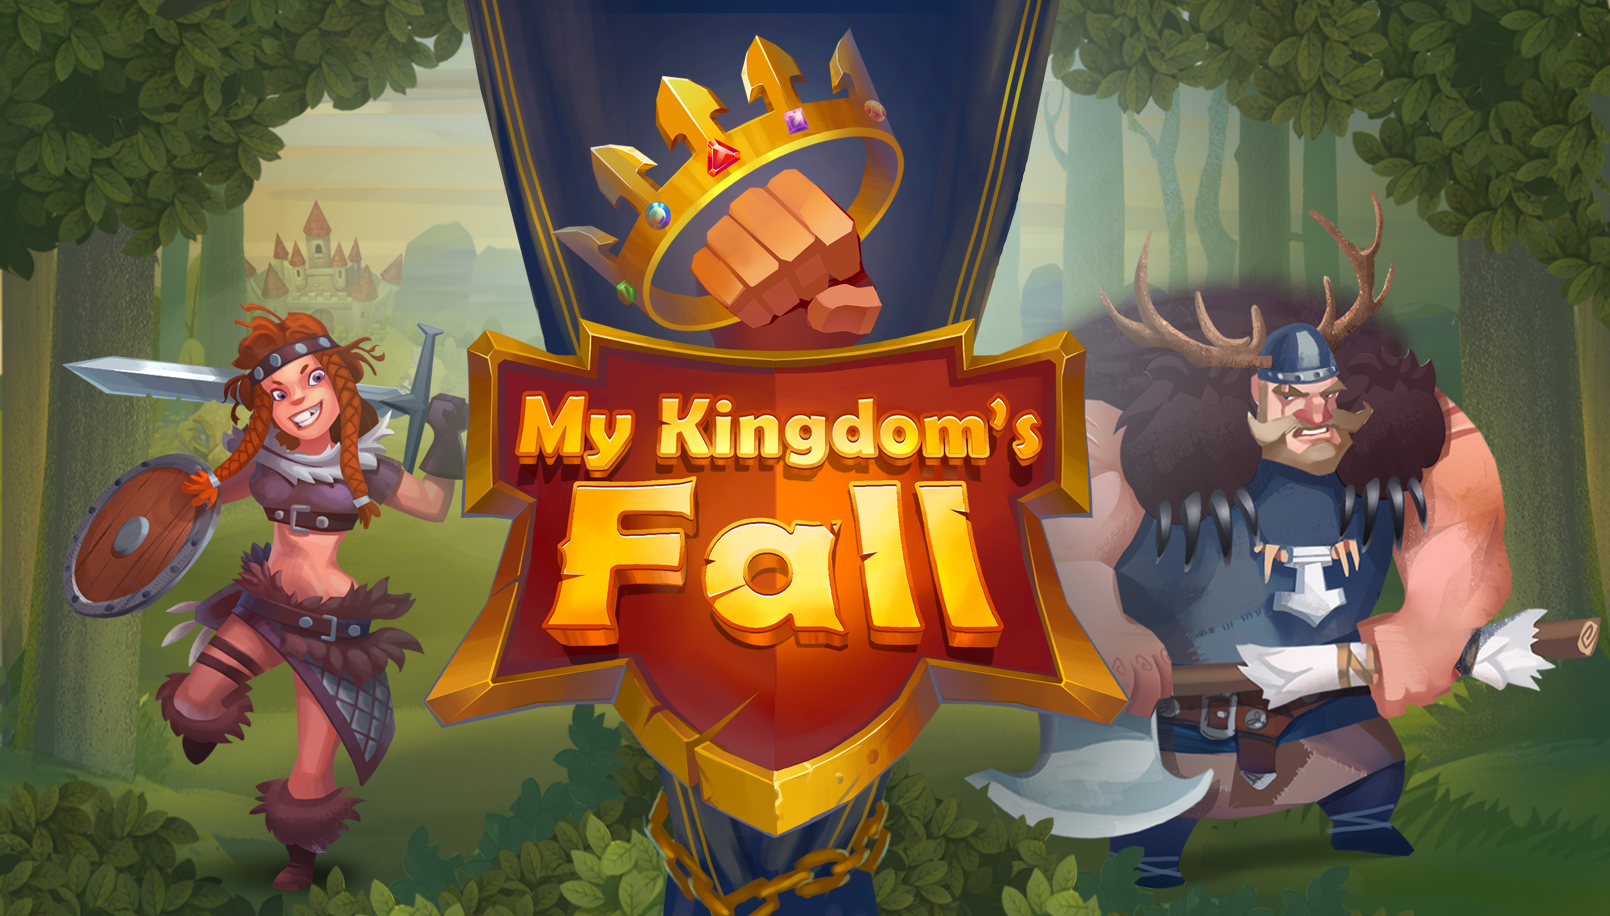 MY KINGDOM’S FALL